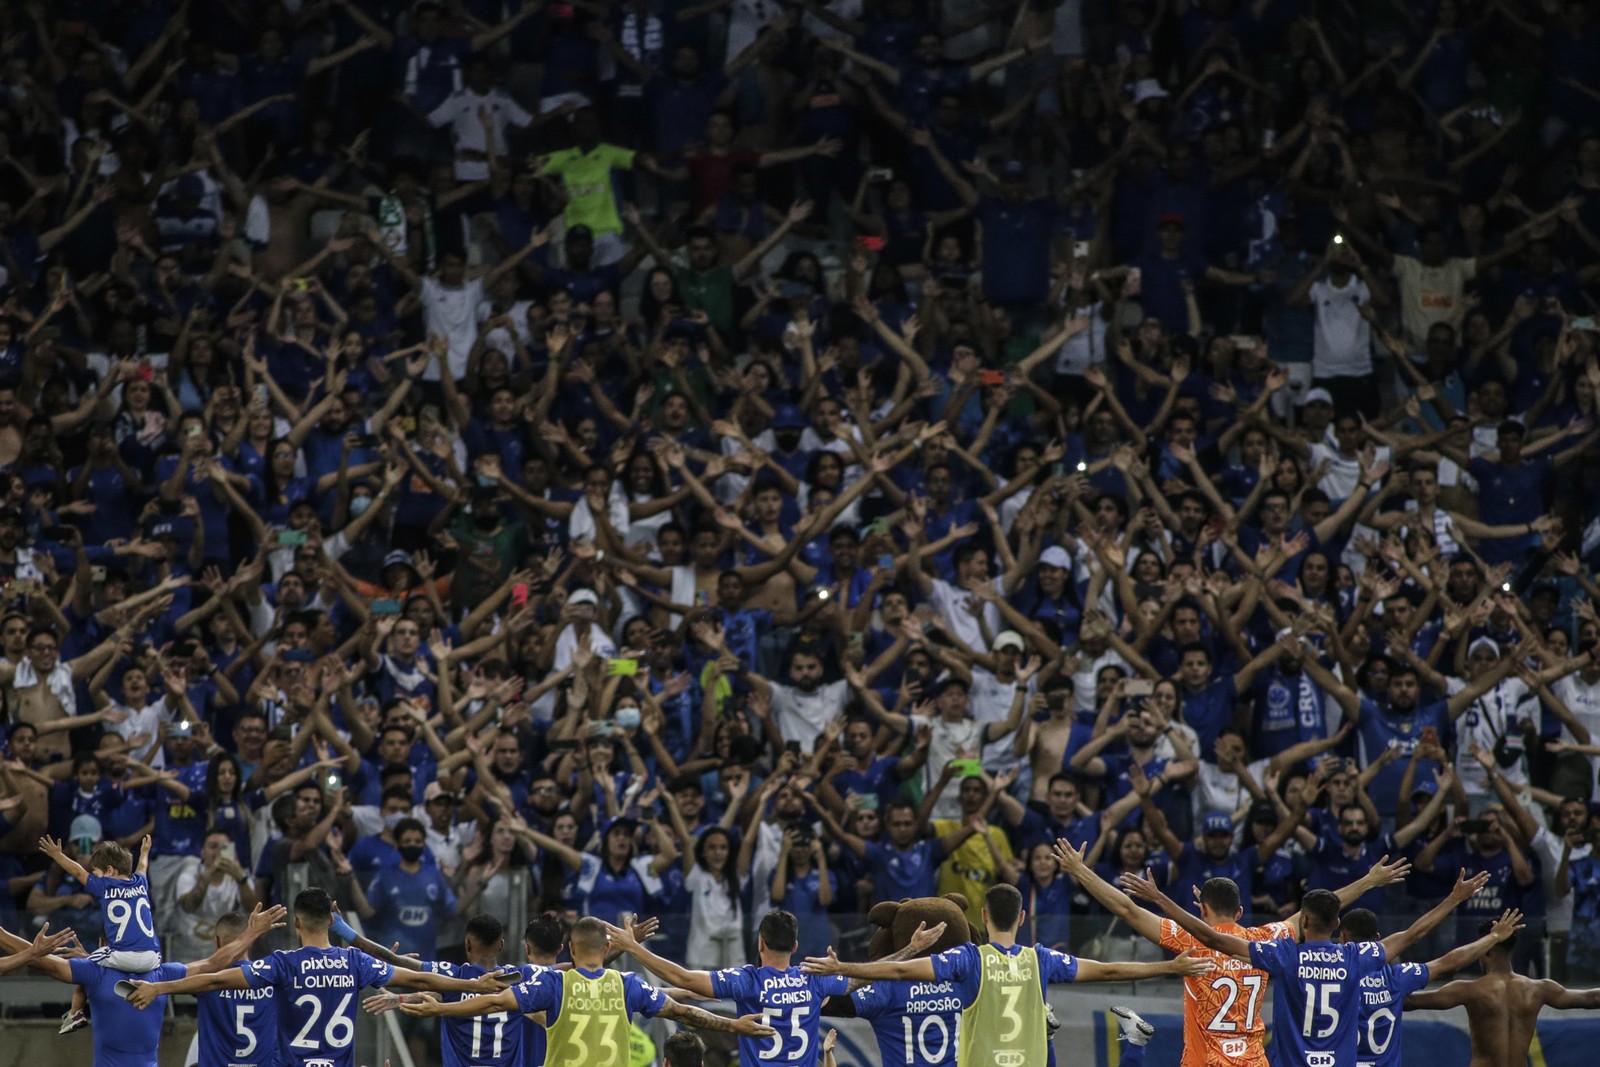 7º — Cruzeiro: 3,1 (de 2,3% a 3,9% pela margem de erro) — Foto: Thomas Santos/Staff Images